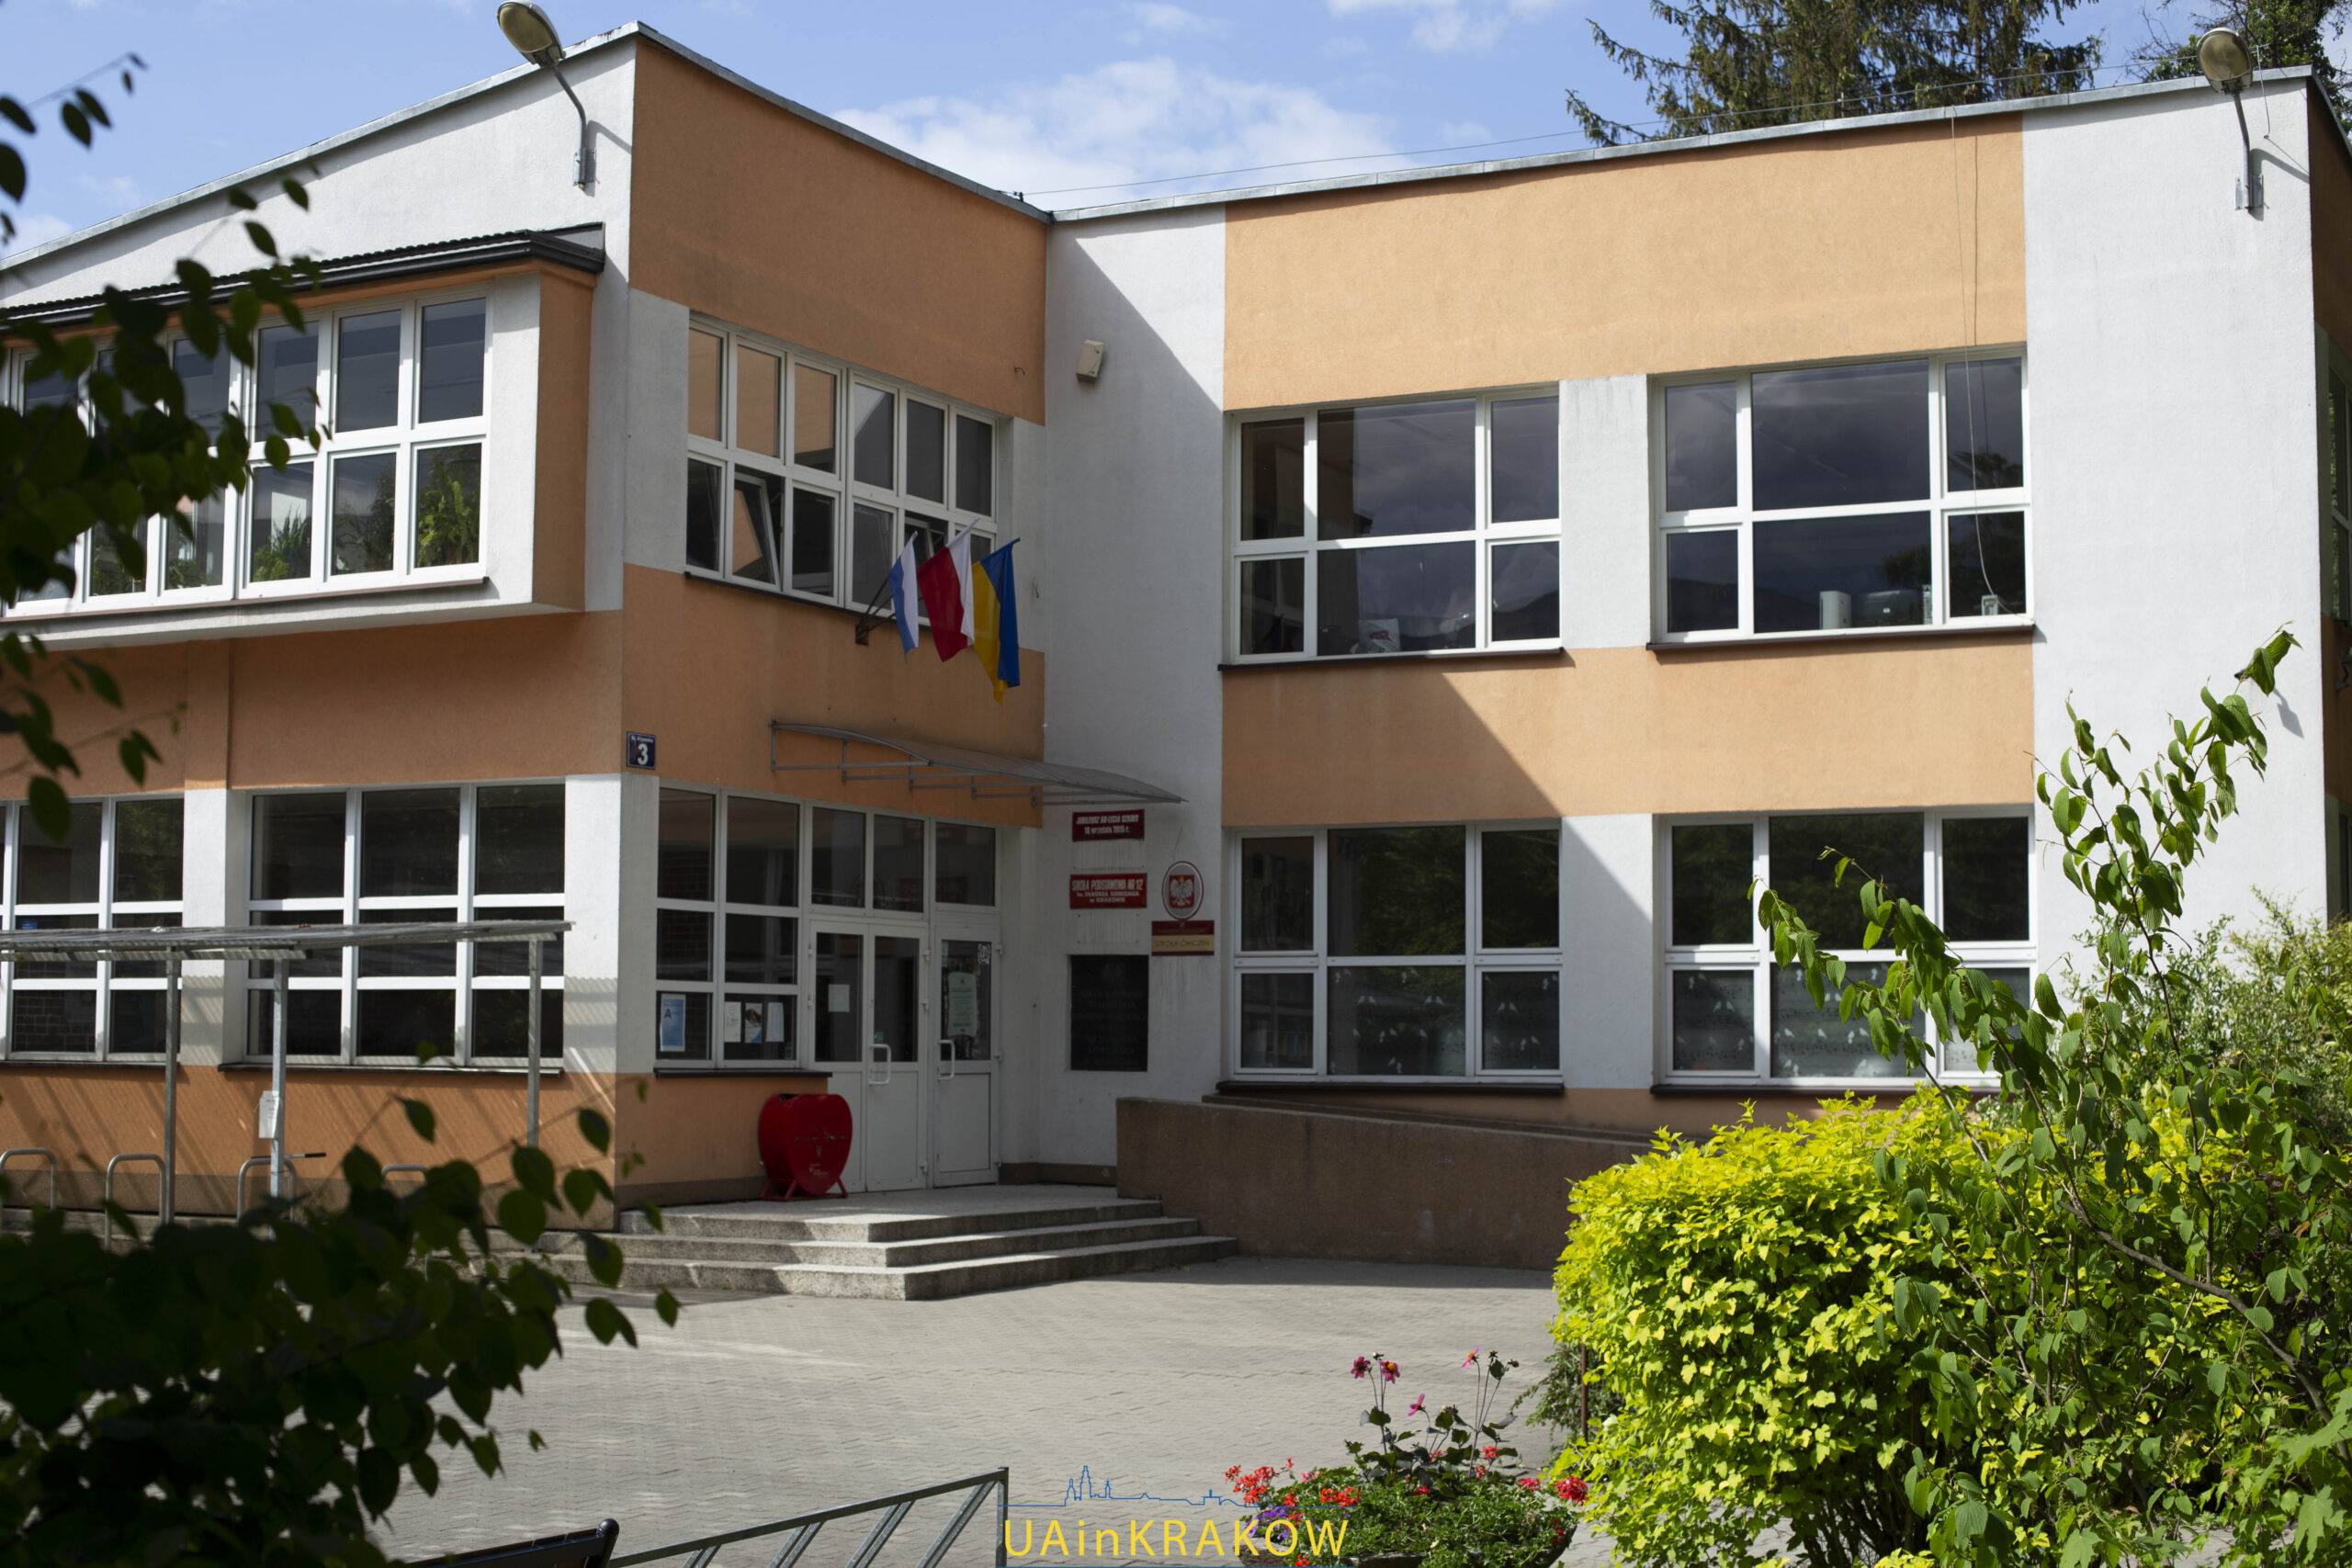 Освіта під час війни: як працює українська школа в Кракові img 8248 2 scaled